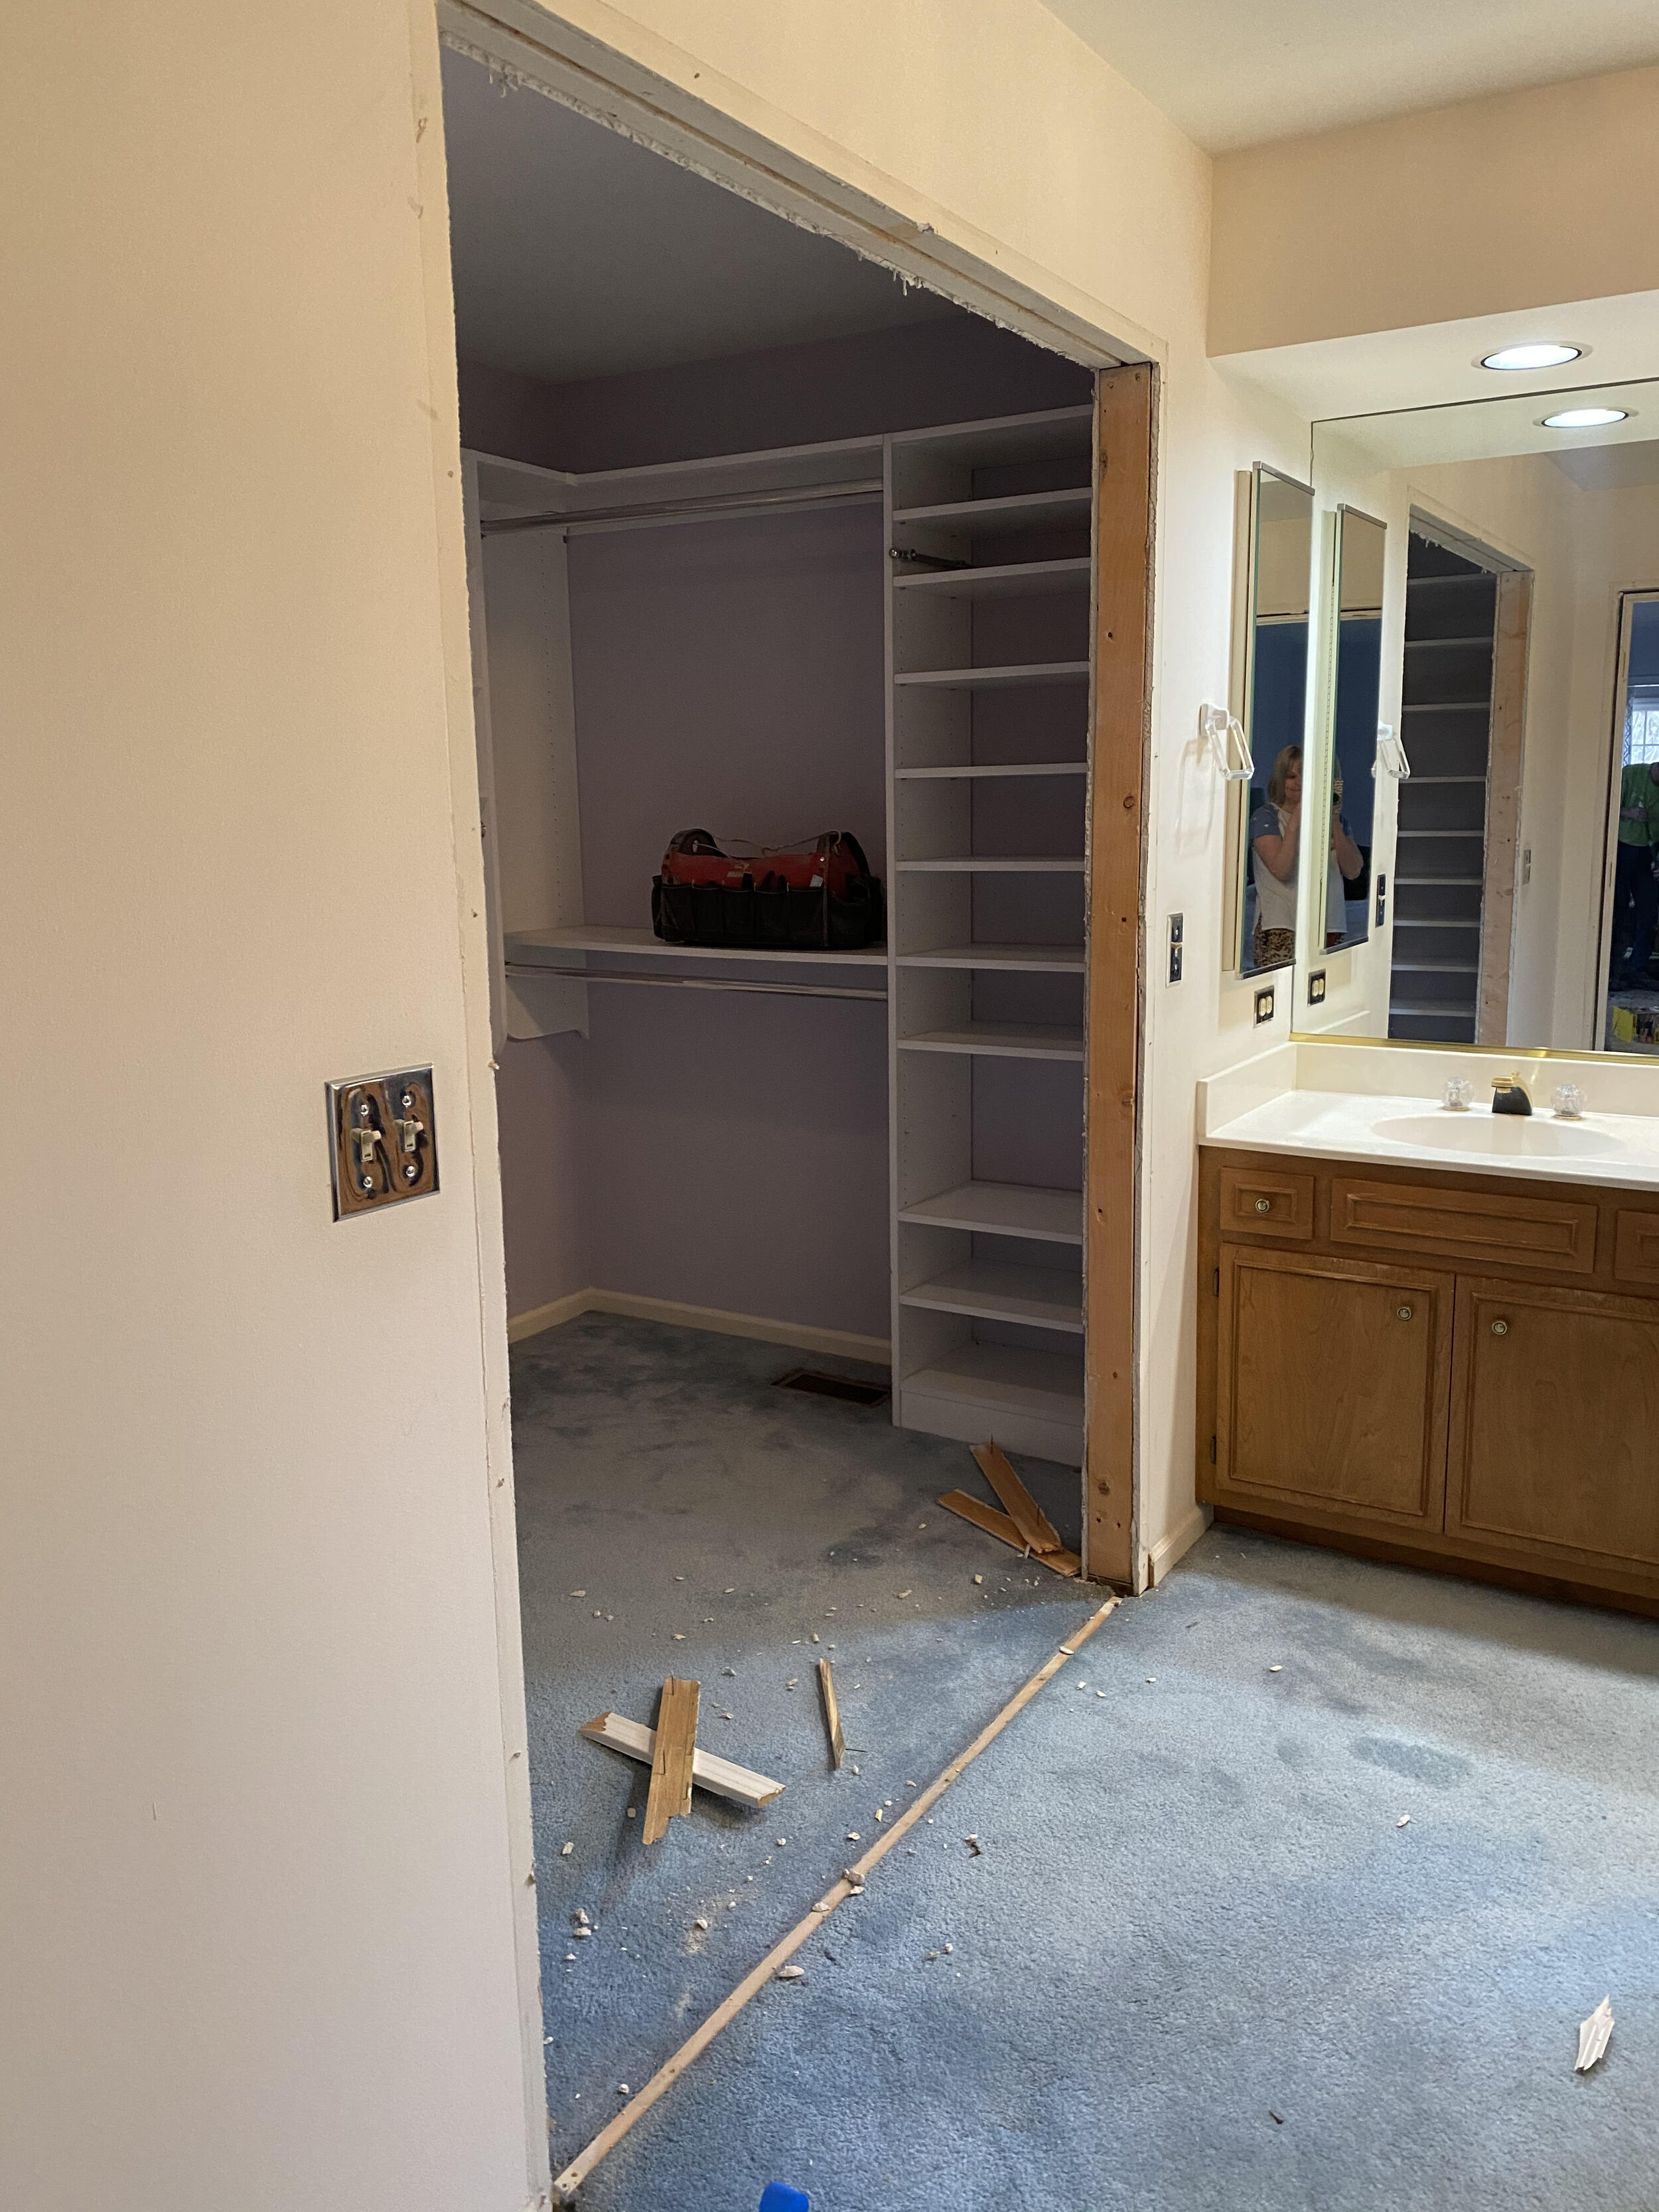 Our Master Bedroom Remodel: Part I &lt;The Bathroom&gt; 